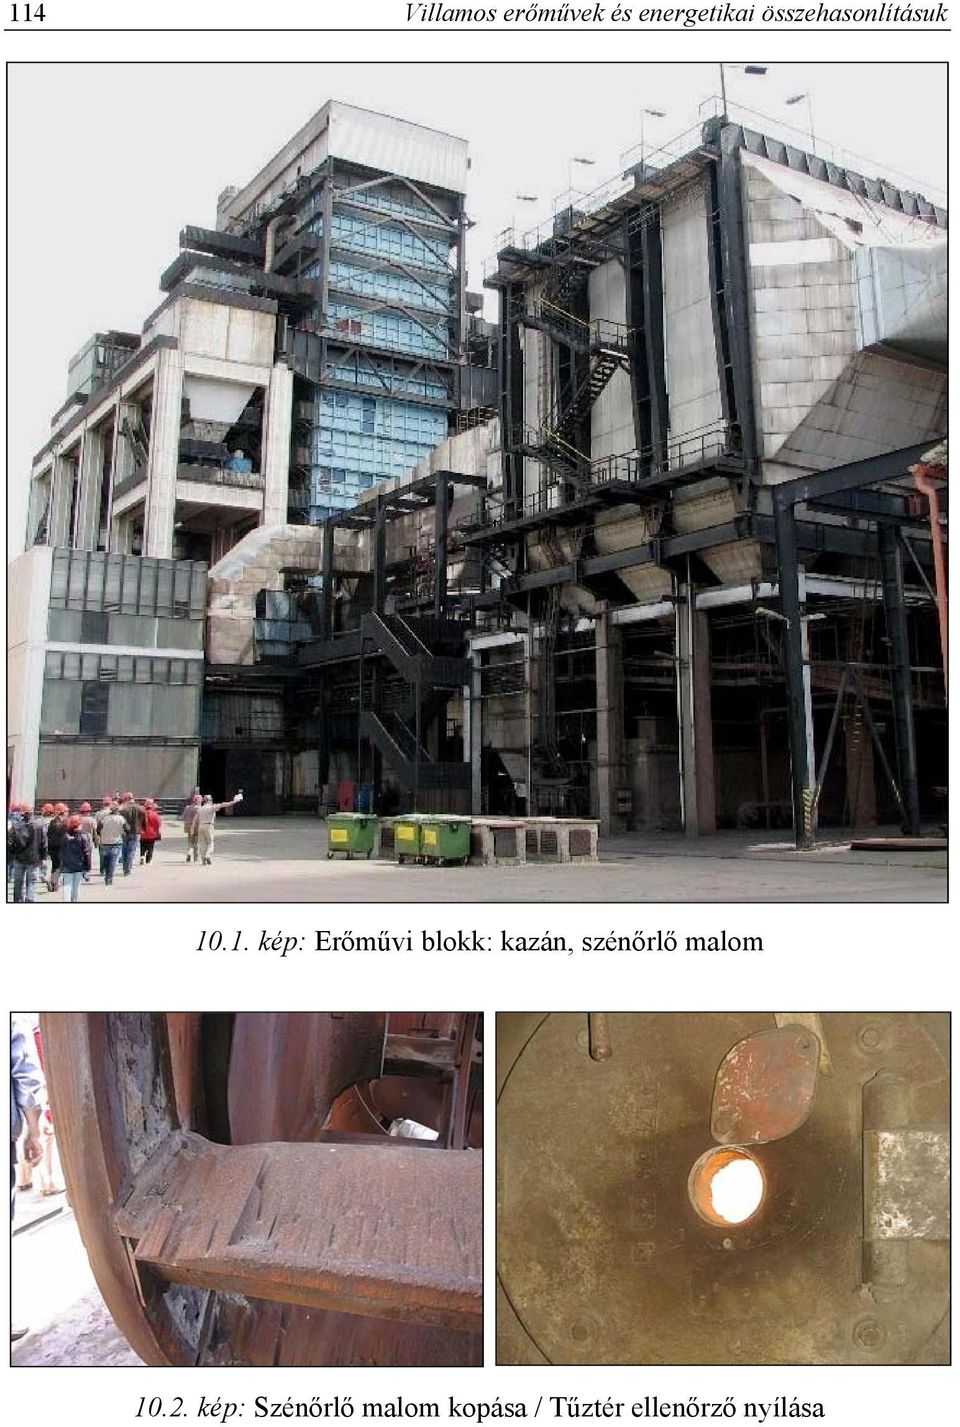 .1. kép: Erőművi blokk: kazán, szénőrlő